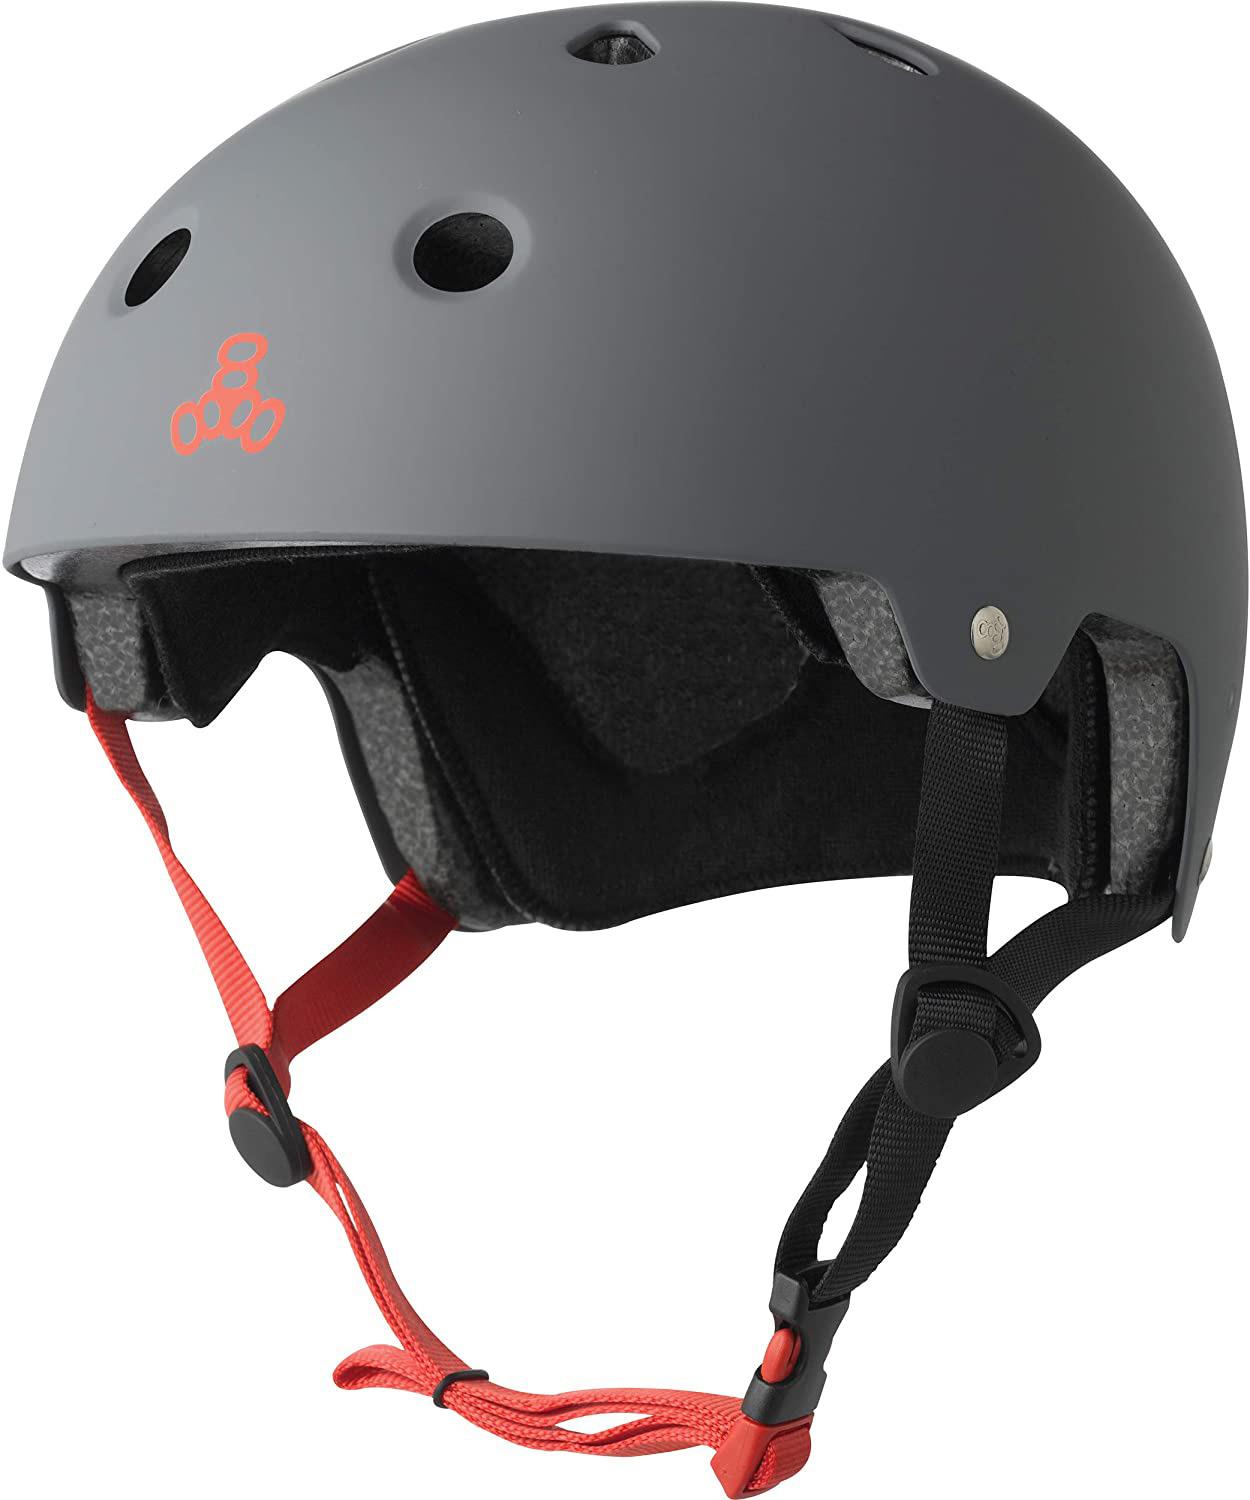 Skate Helmets